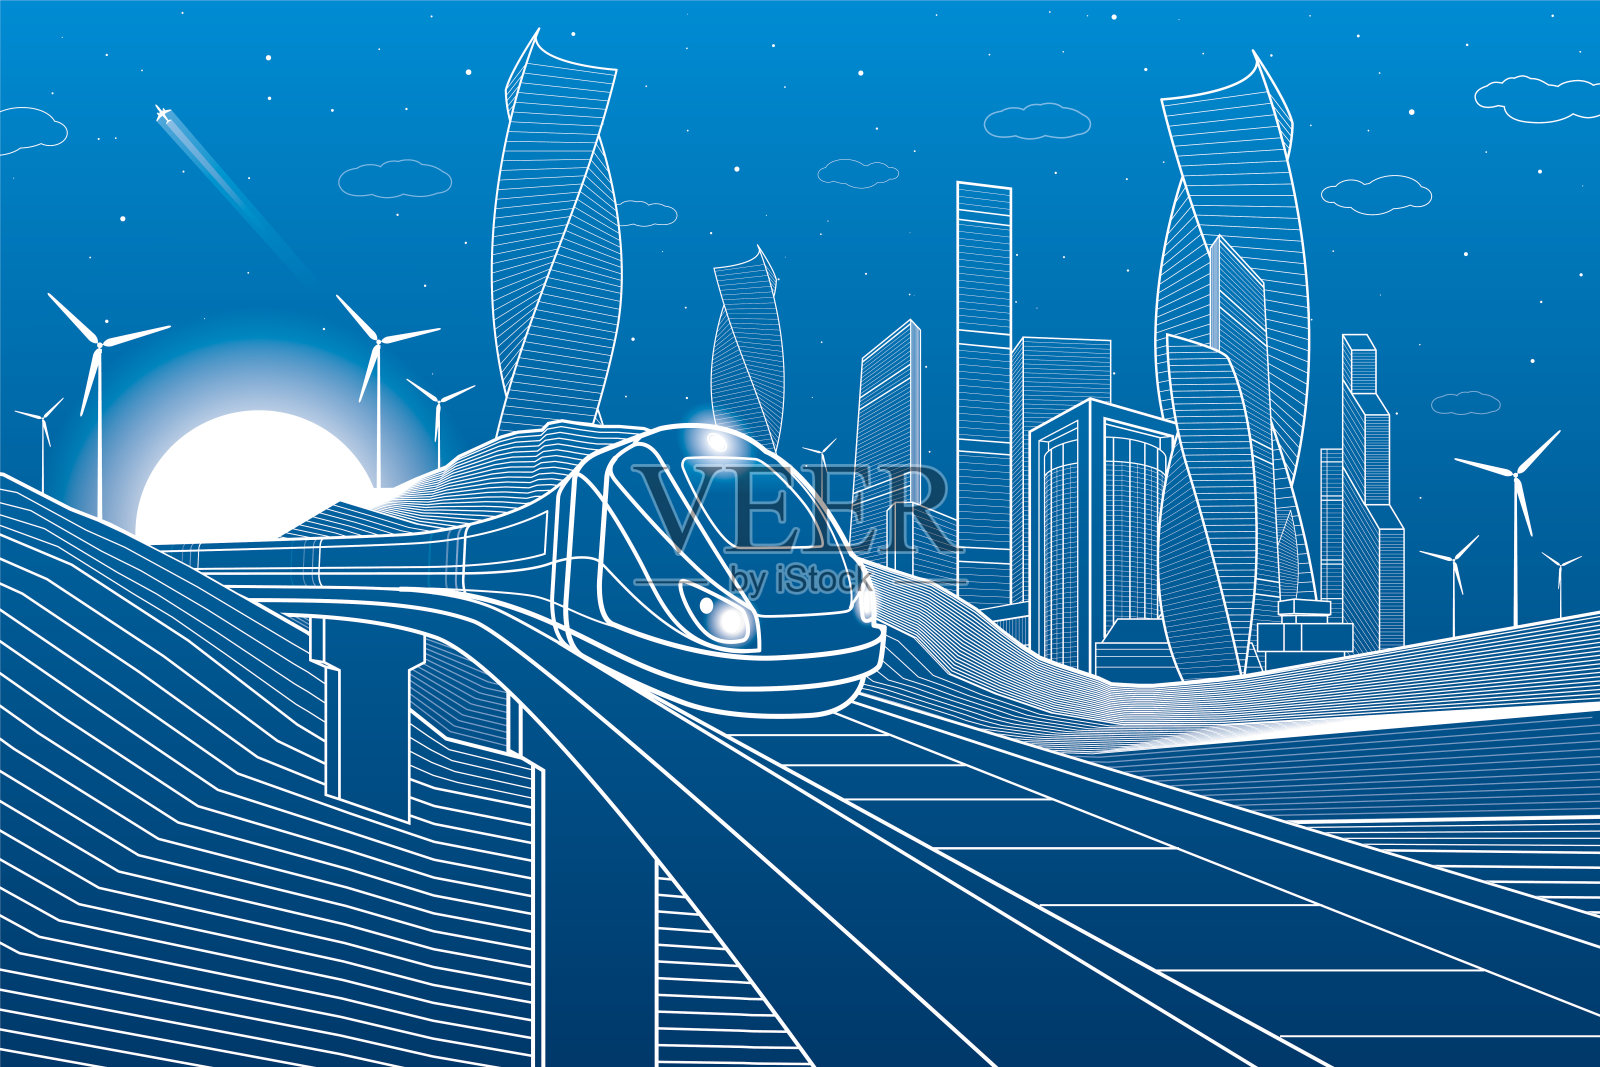 火车在山中的铁路桥上行驶。高楼大厦、现代城市、商业建筑。夜景。蓝色背景上的白线。风车的力量。矢量设计艺术插画图片素材